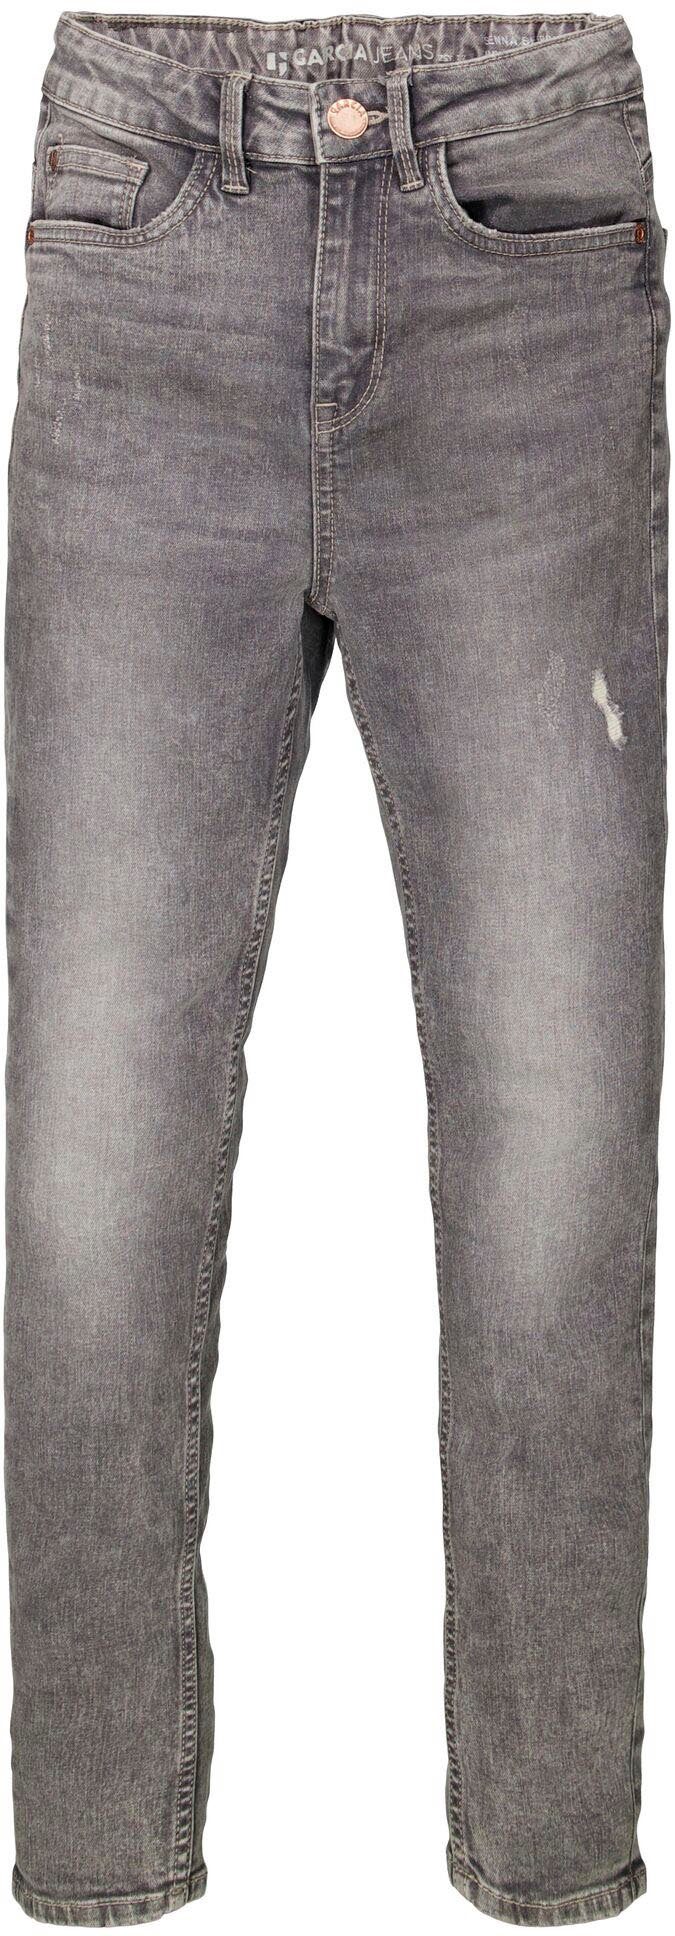 Garcia Stretch-Jeans Sienna Passform und hohe Taille 565, Sehr schmalen